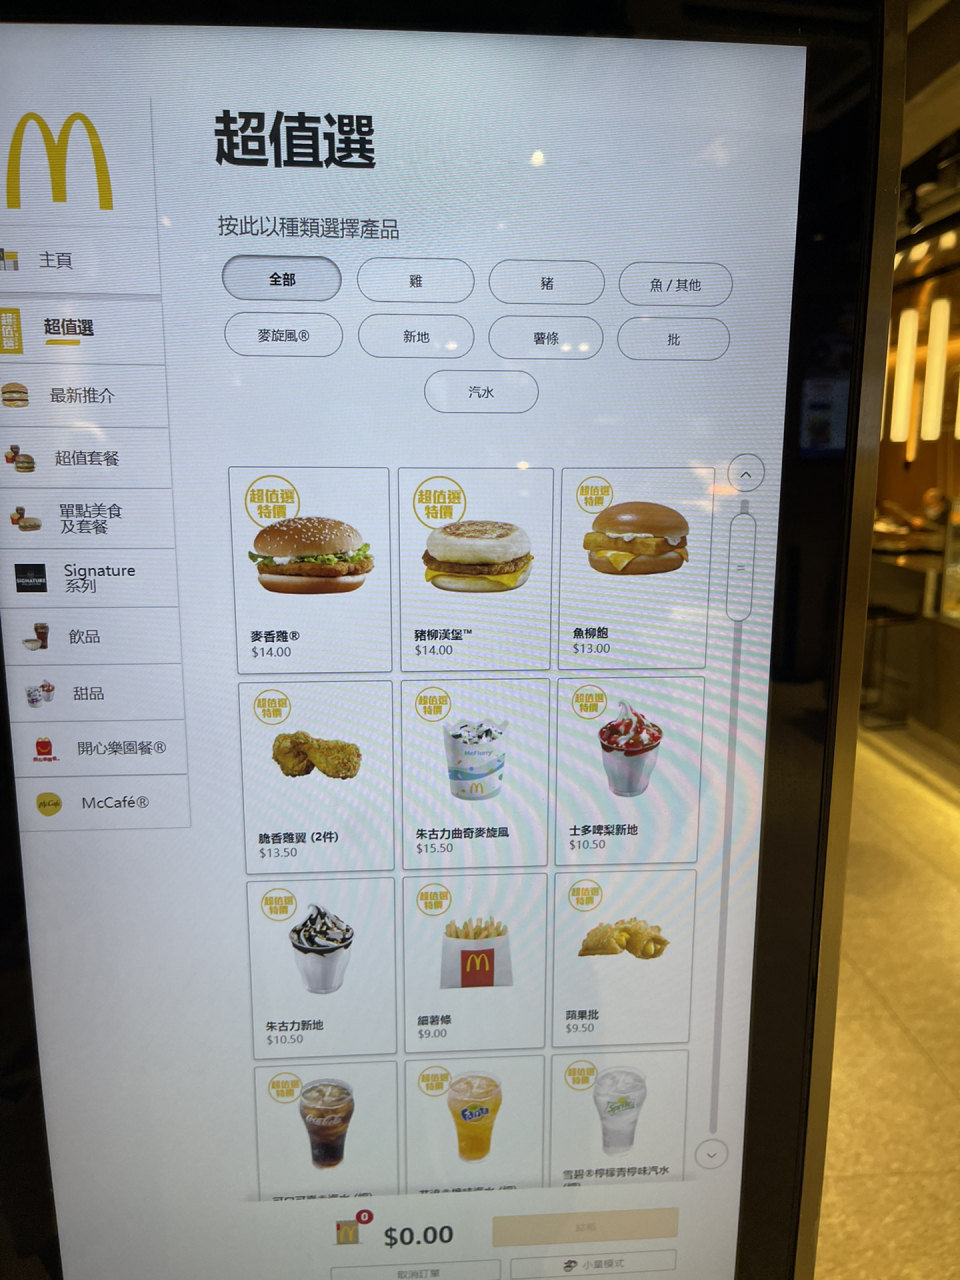 麦当劳套餐图片价格表图片